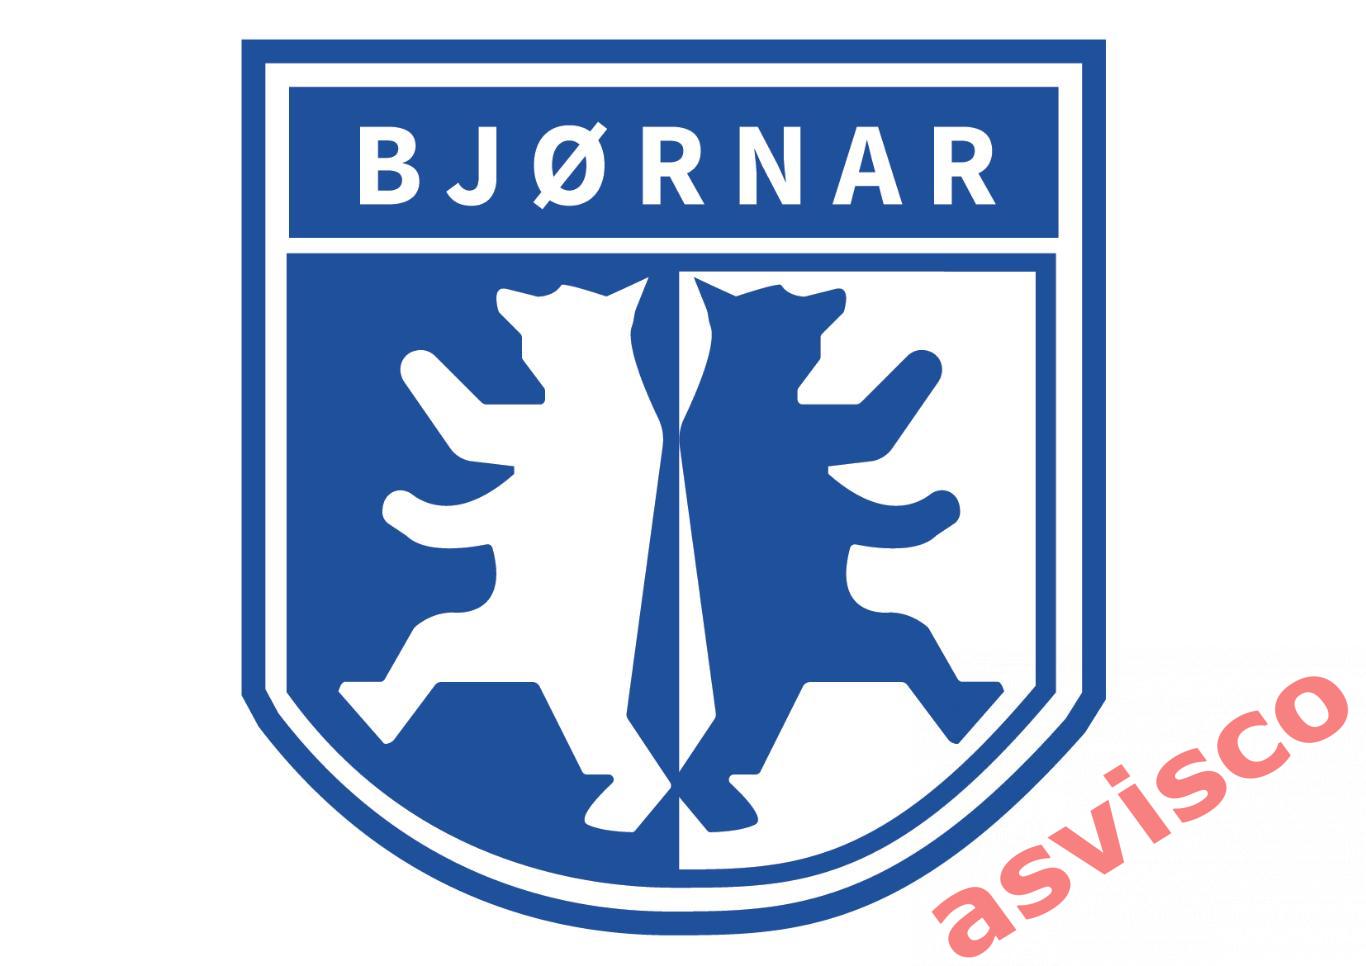 Значок Гандбольный Клуб BJORNAR Handball / Бьорнар из Бергена / Норвегия. 7